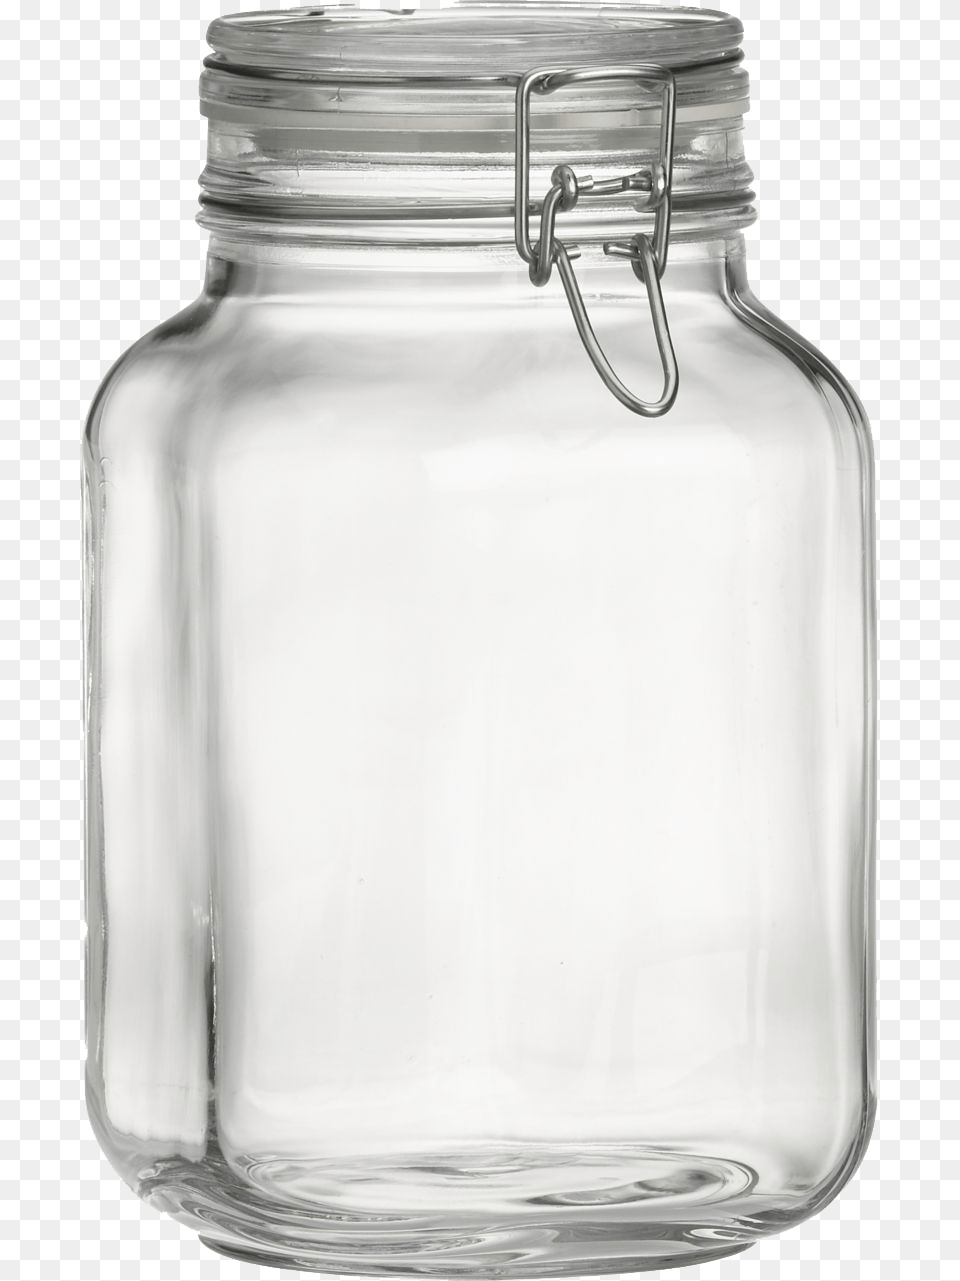 Jar Transparent Image Transparent Mason Jar, Bottle, Shaker Free Png Download